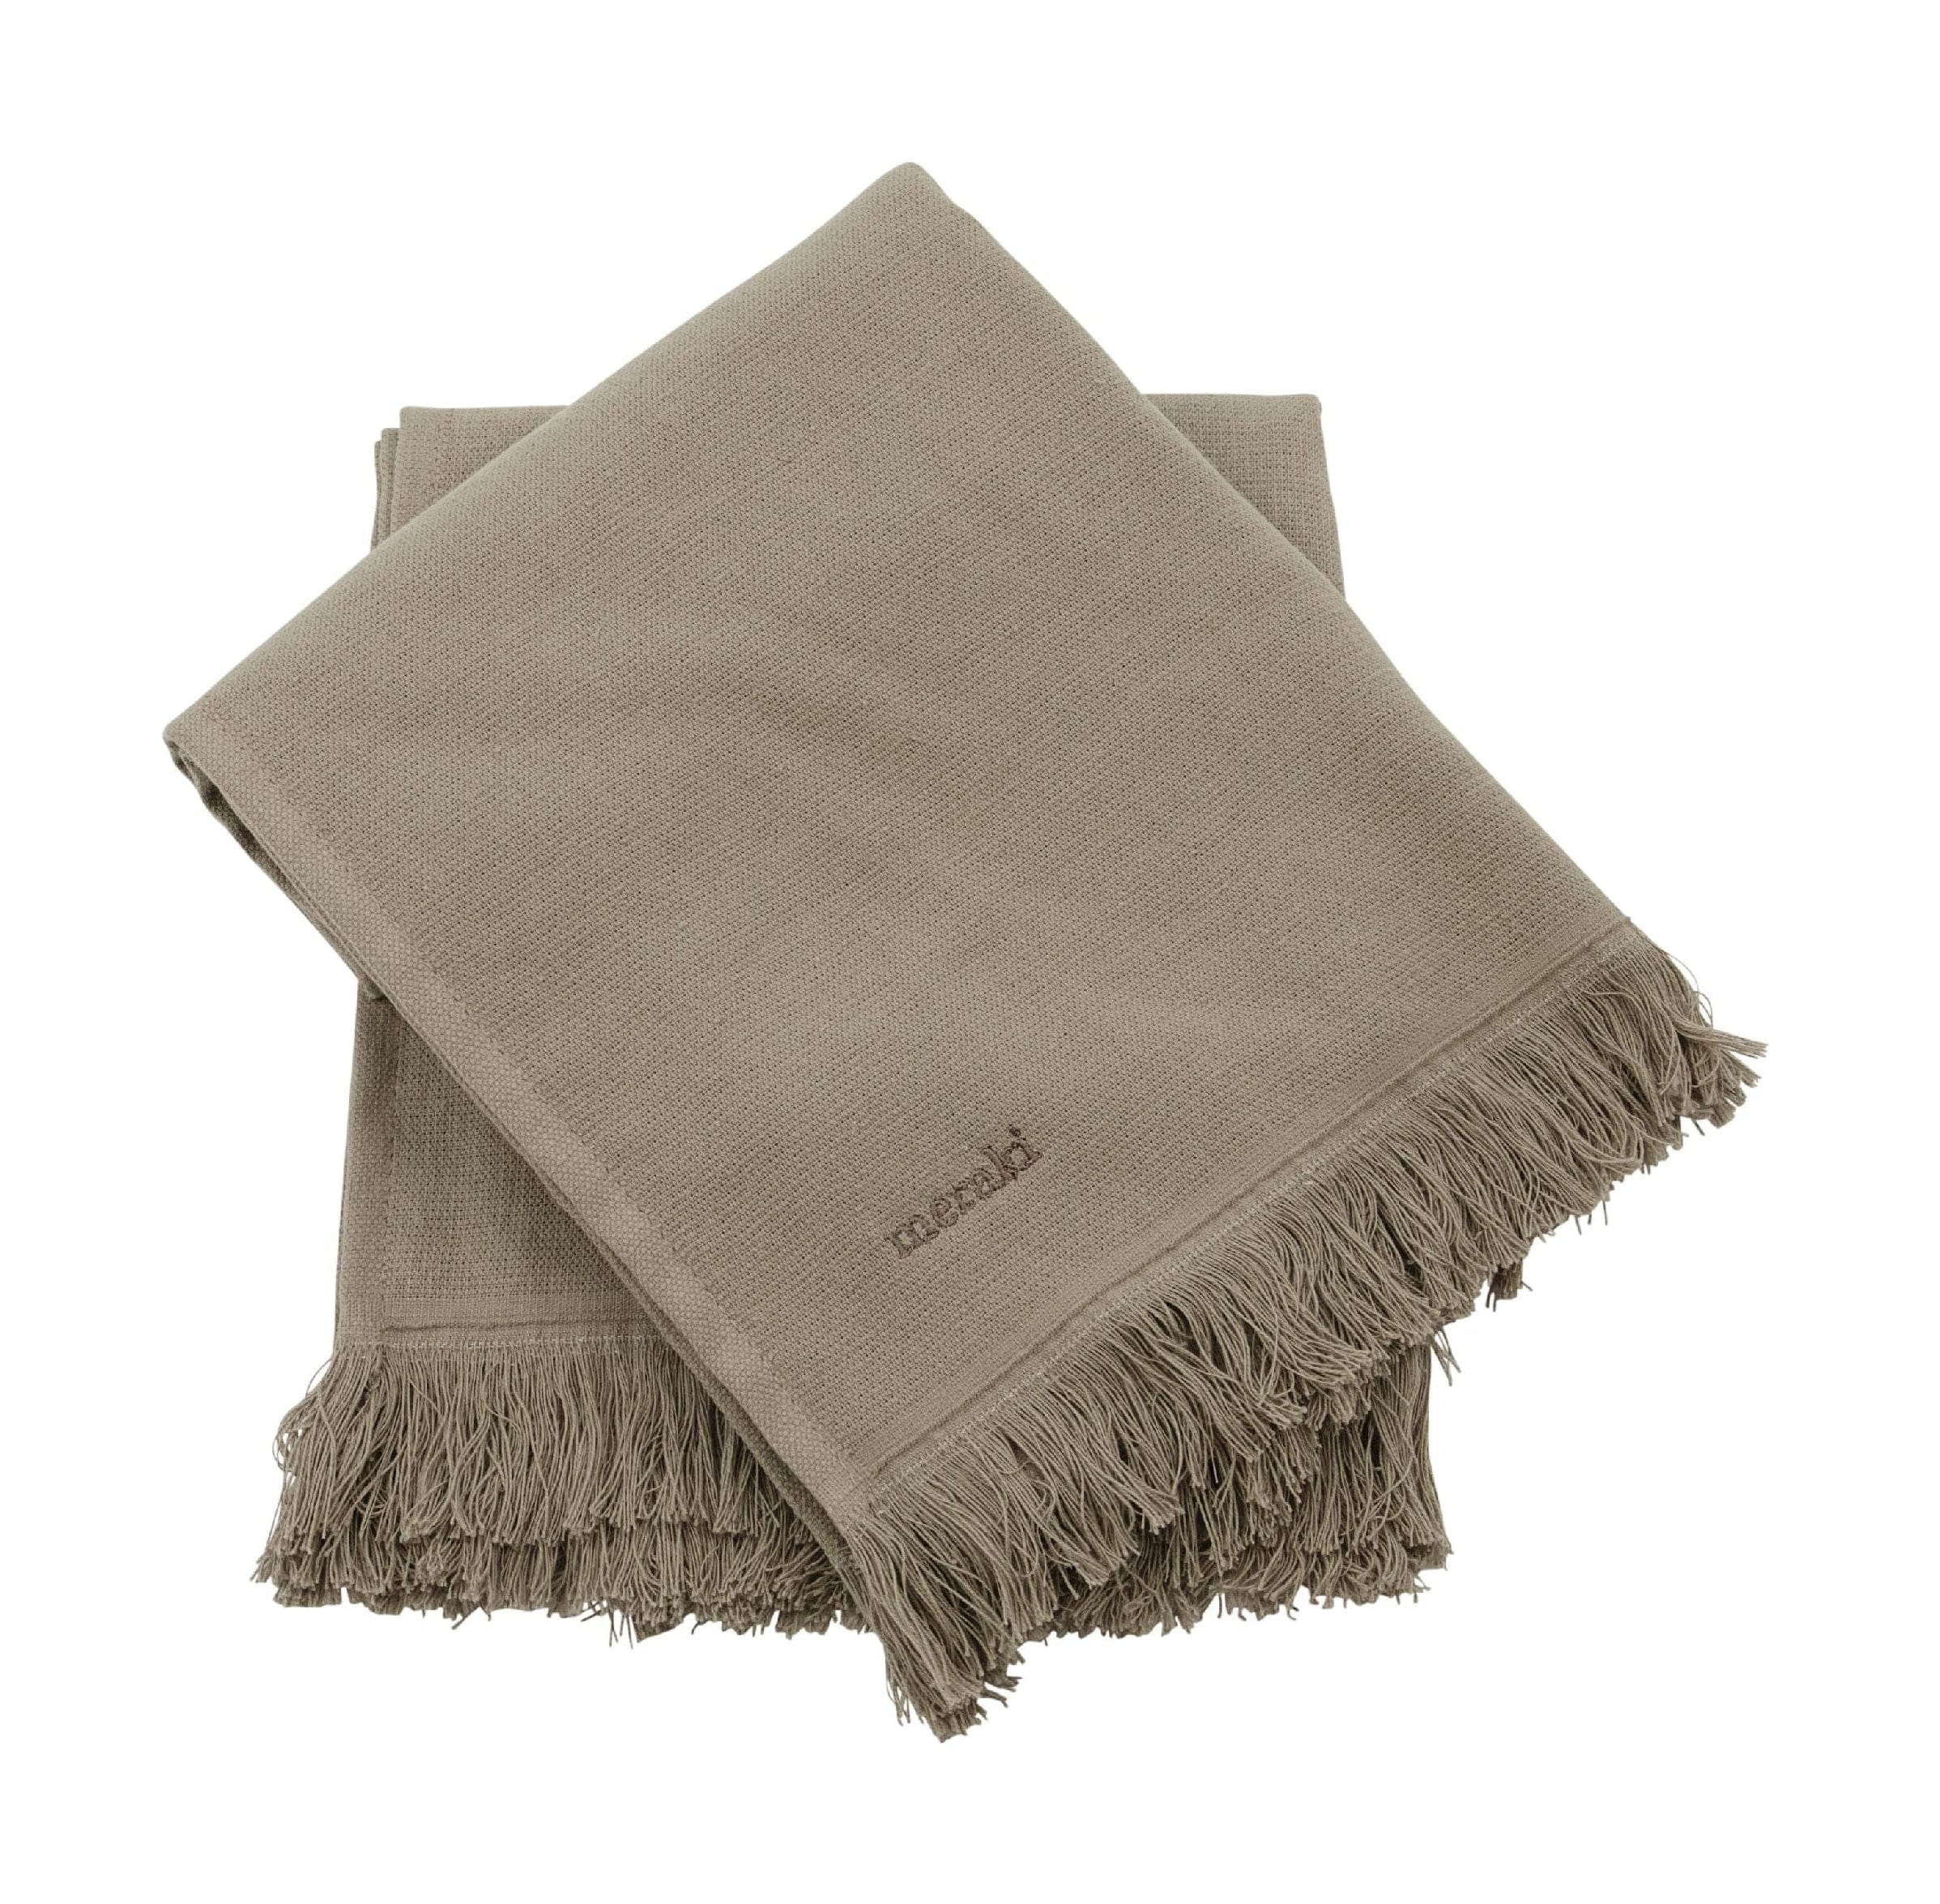 Meraki Lunaria handdoek set van 2, warm grijs